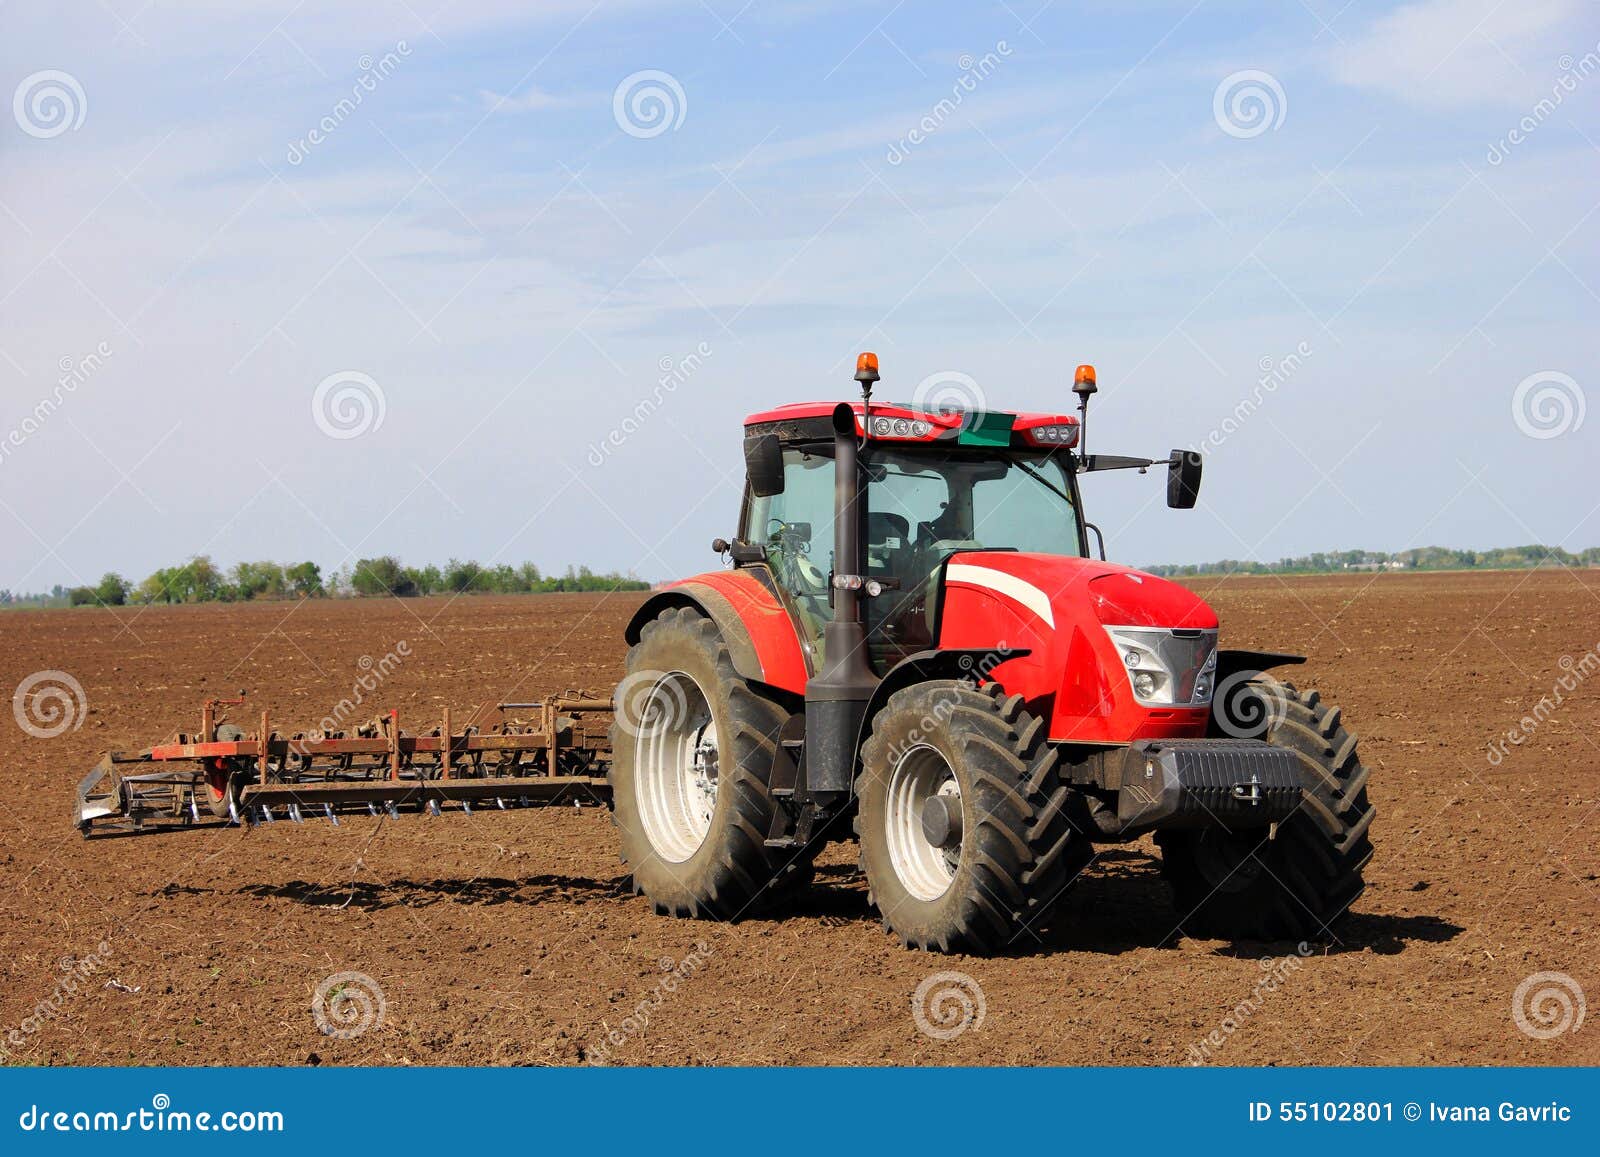 tractor on a farmland